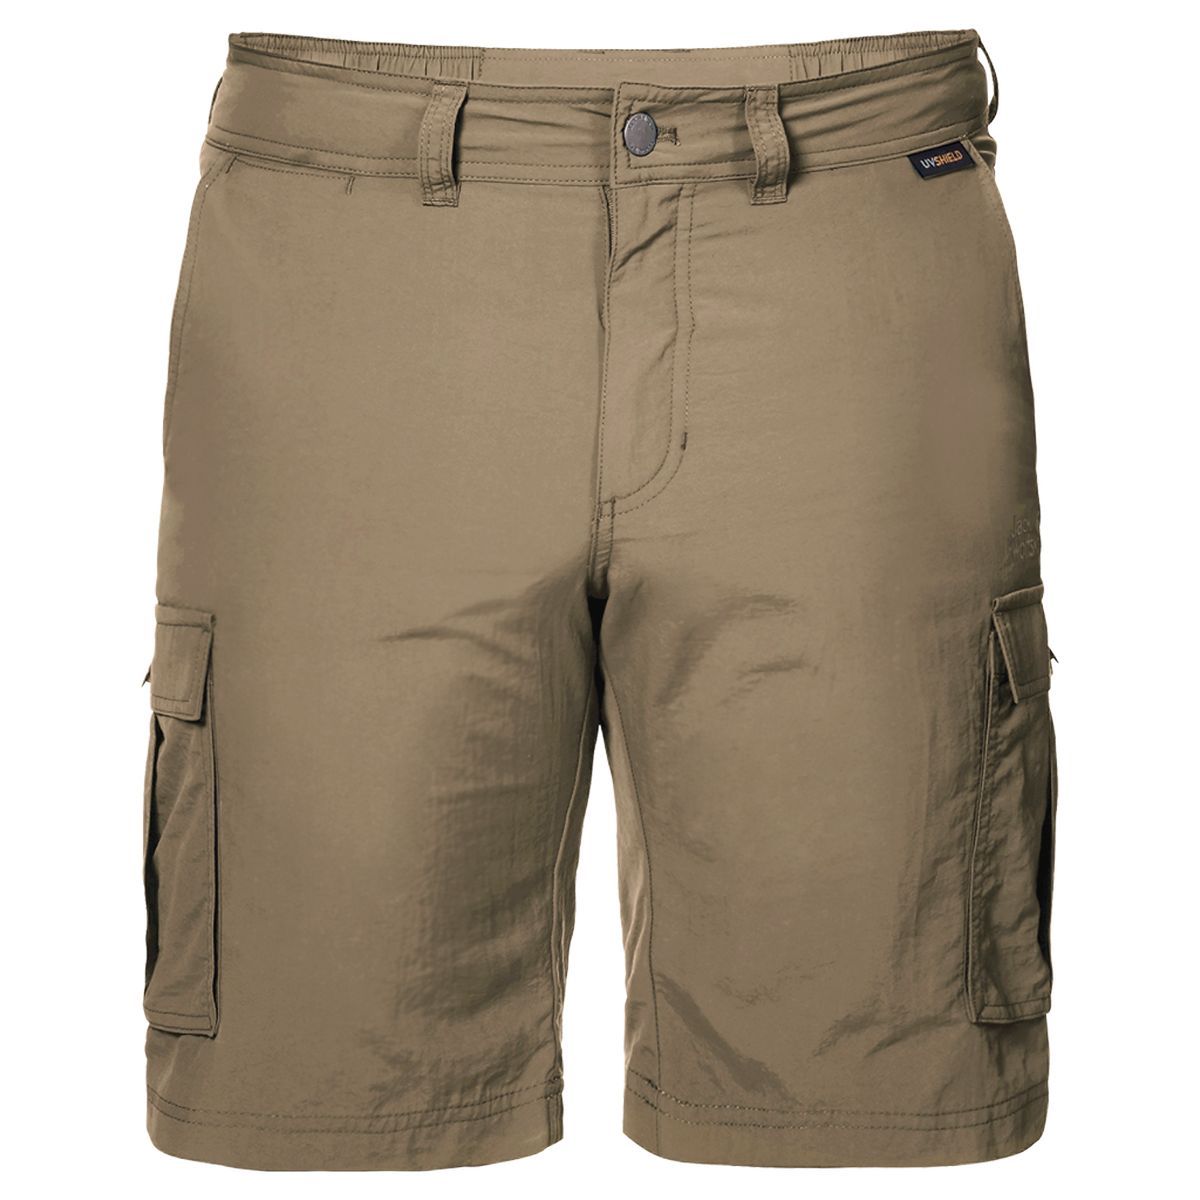   Jack Wolfskin Canyon Cargo Shorts, : . 1504201-5605.  52